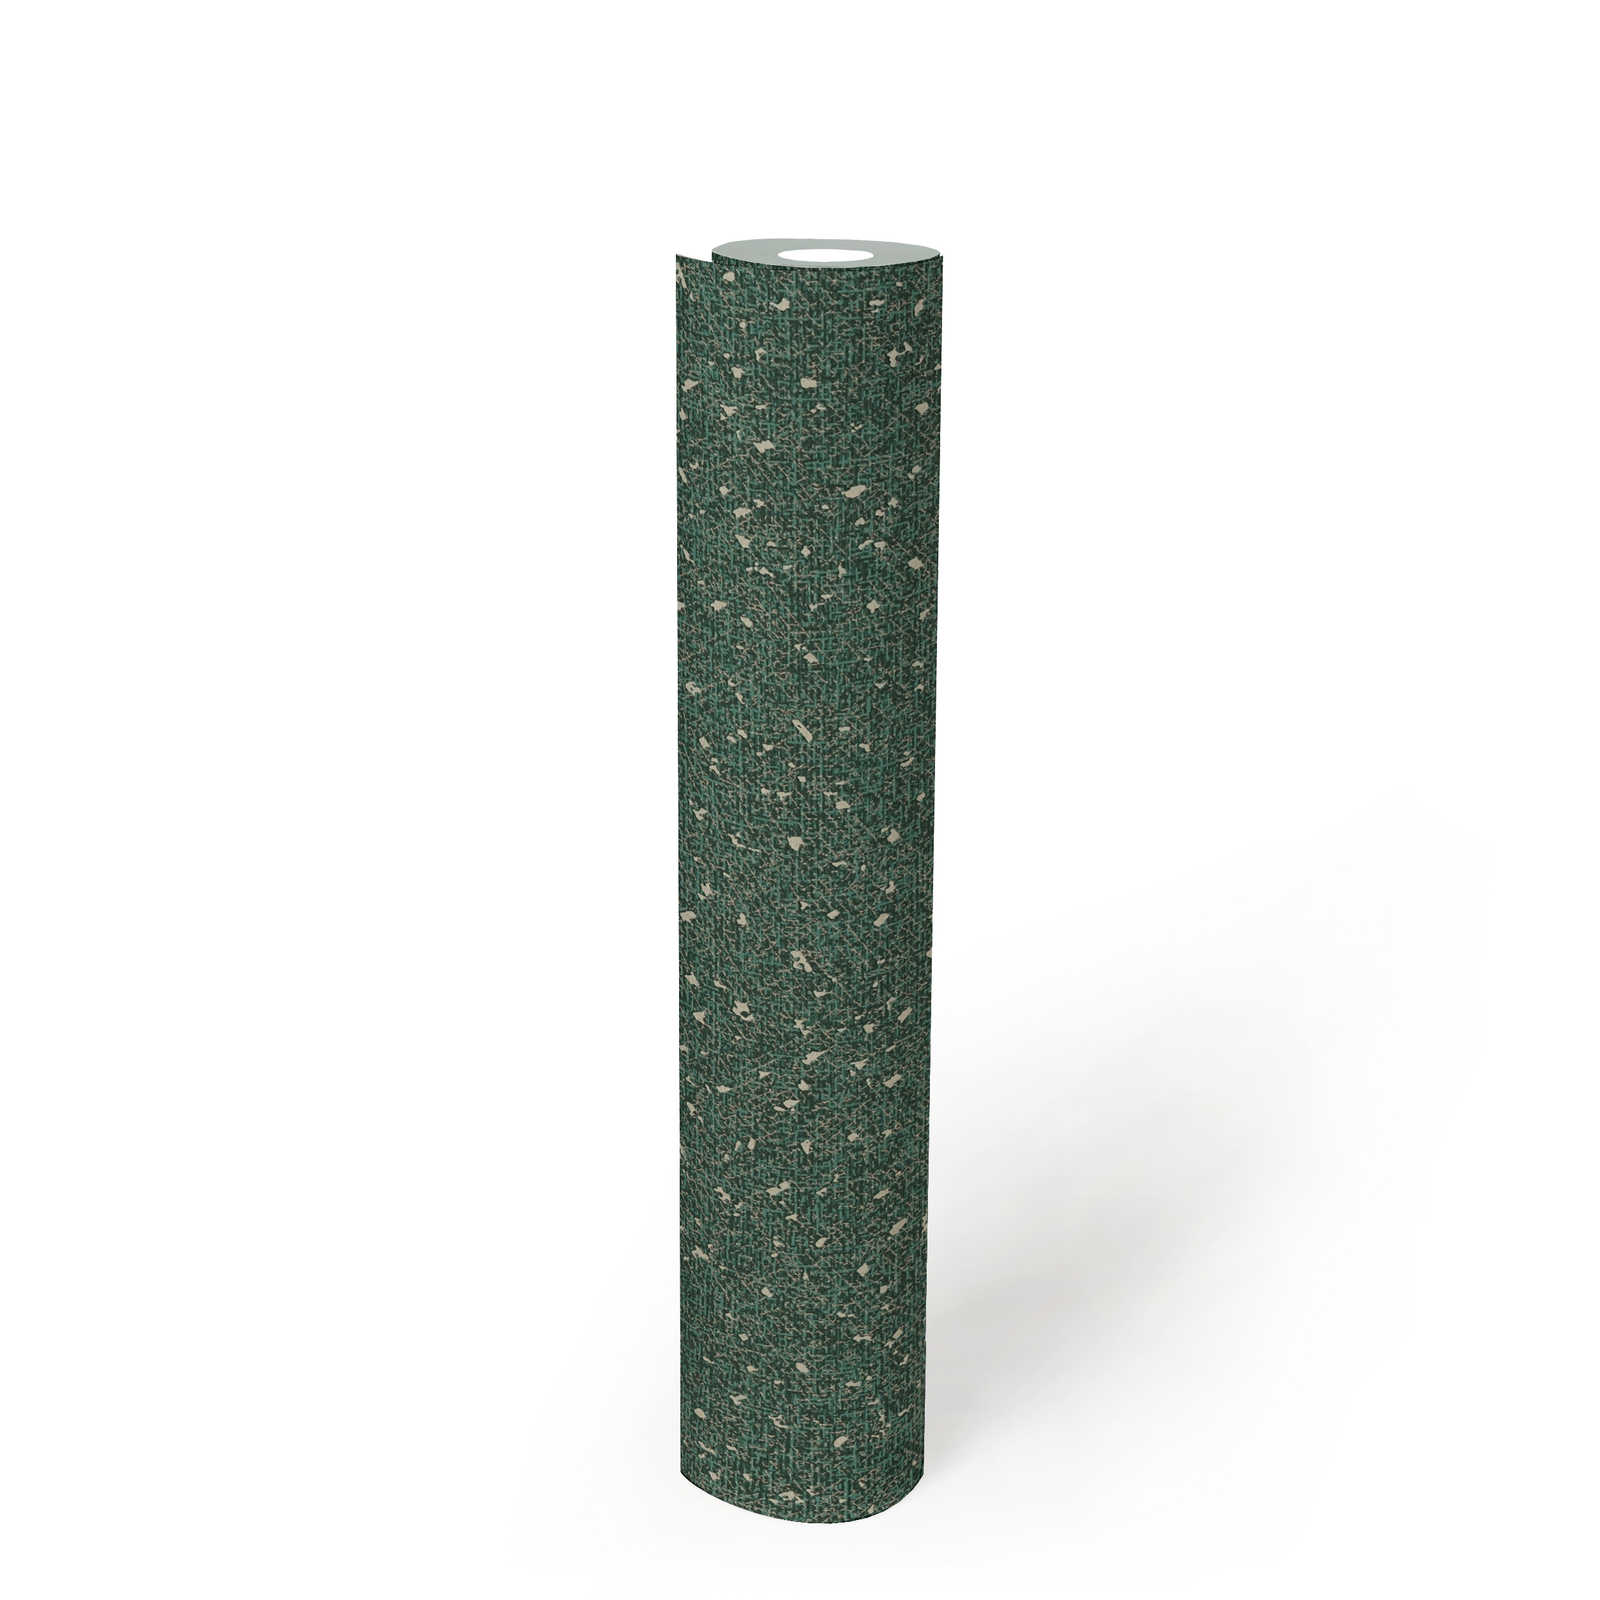             Behang met textielstructuur en metallic accent - Groen, Metallic
        